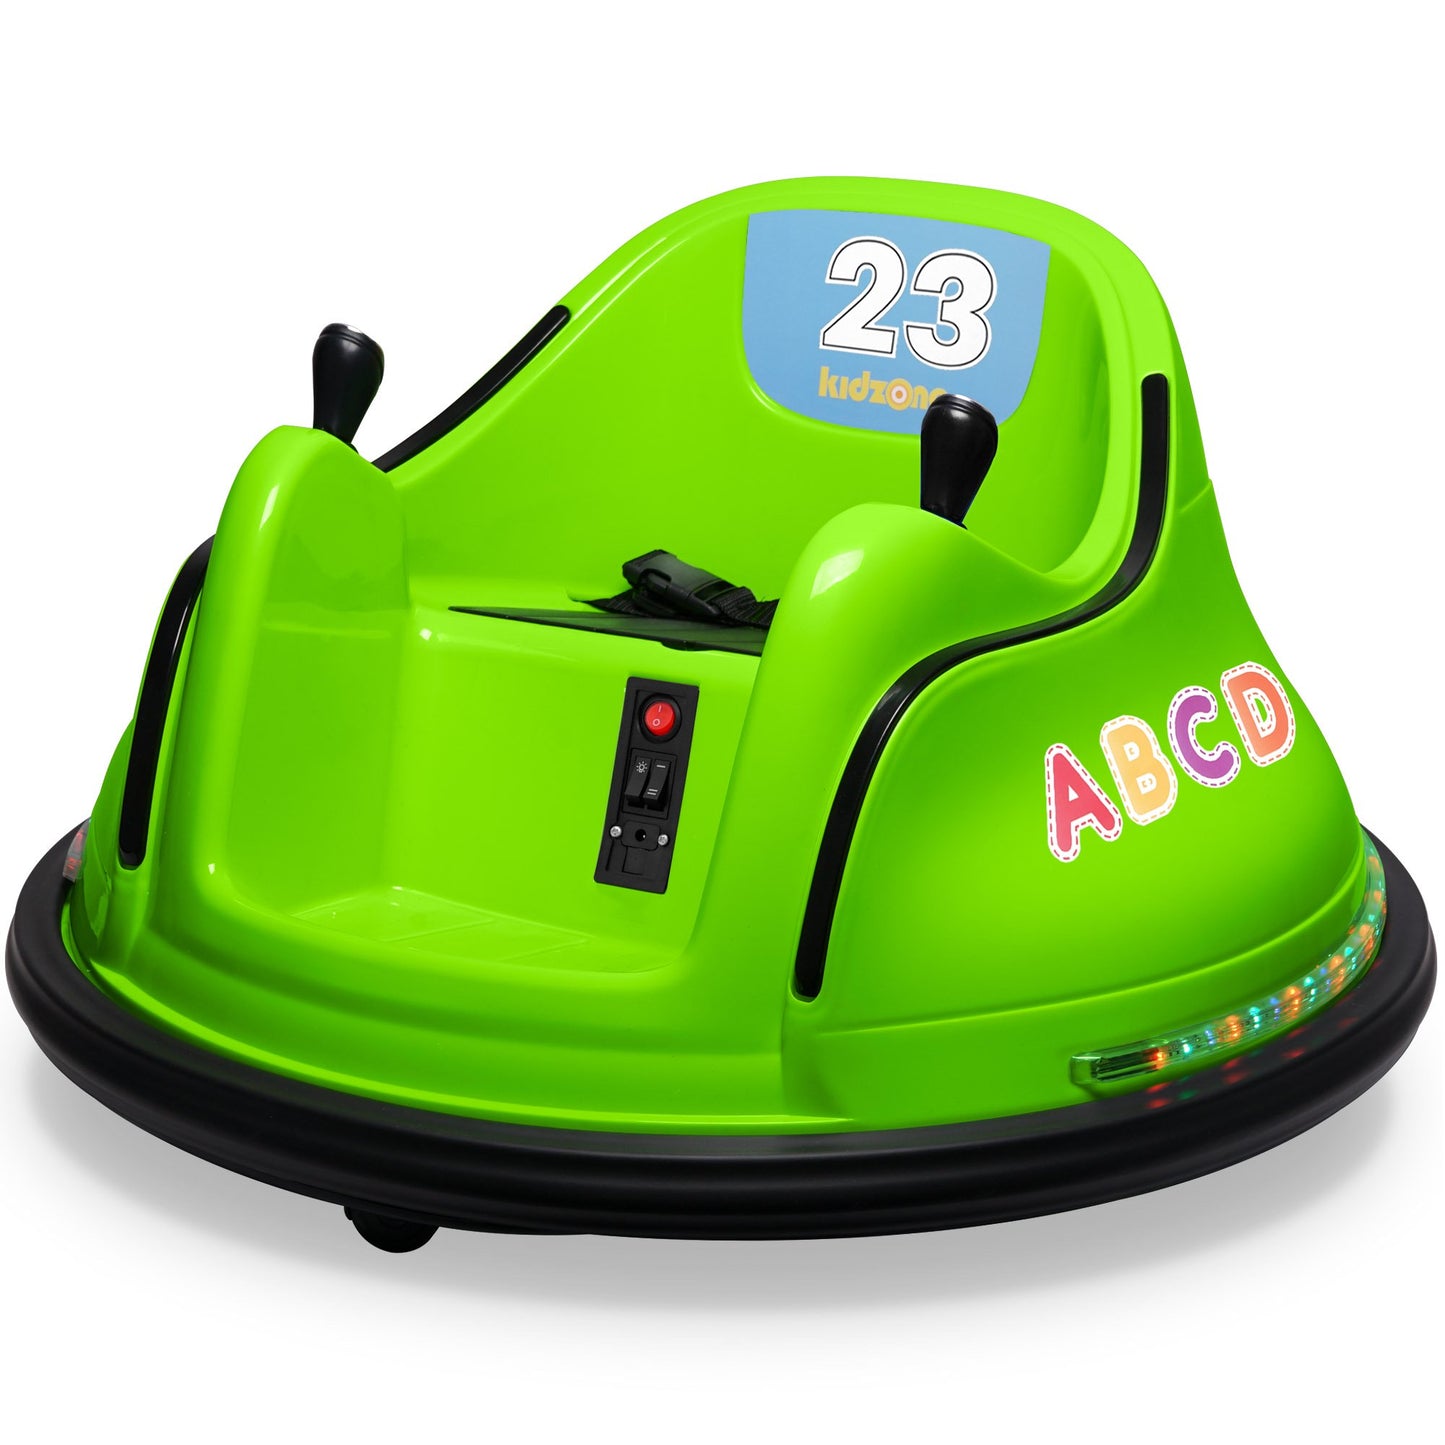 Kidzone DIY Número 6V Juguete para niños Paseo eléctrico en parachoques Coche Vehículo Control remoto 360 Spin Certificado ASTM 1,5-6 años